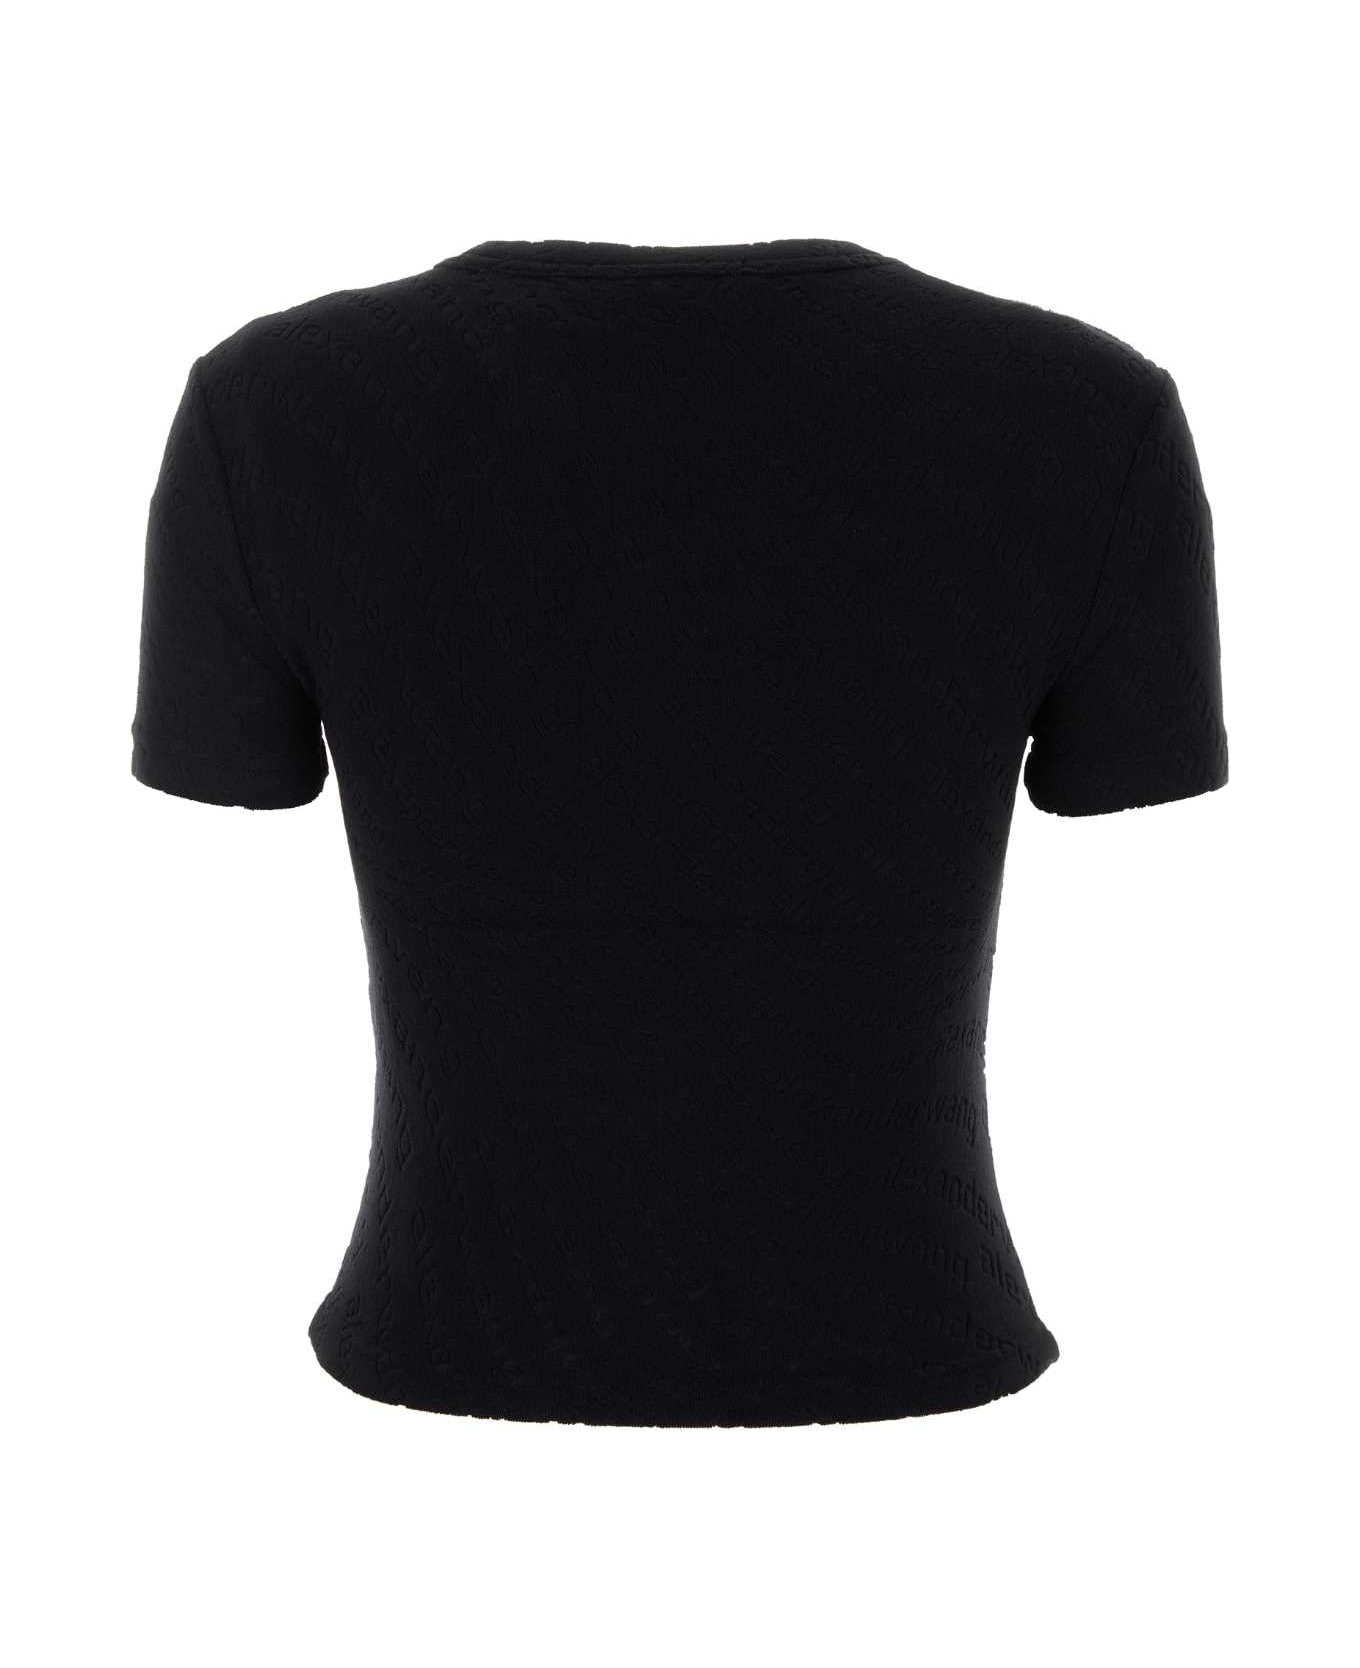 T by Alexander Wang Black Terry Fabric T-shirt - Black